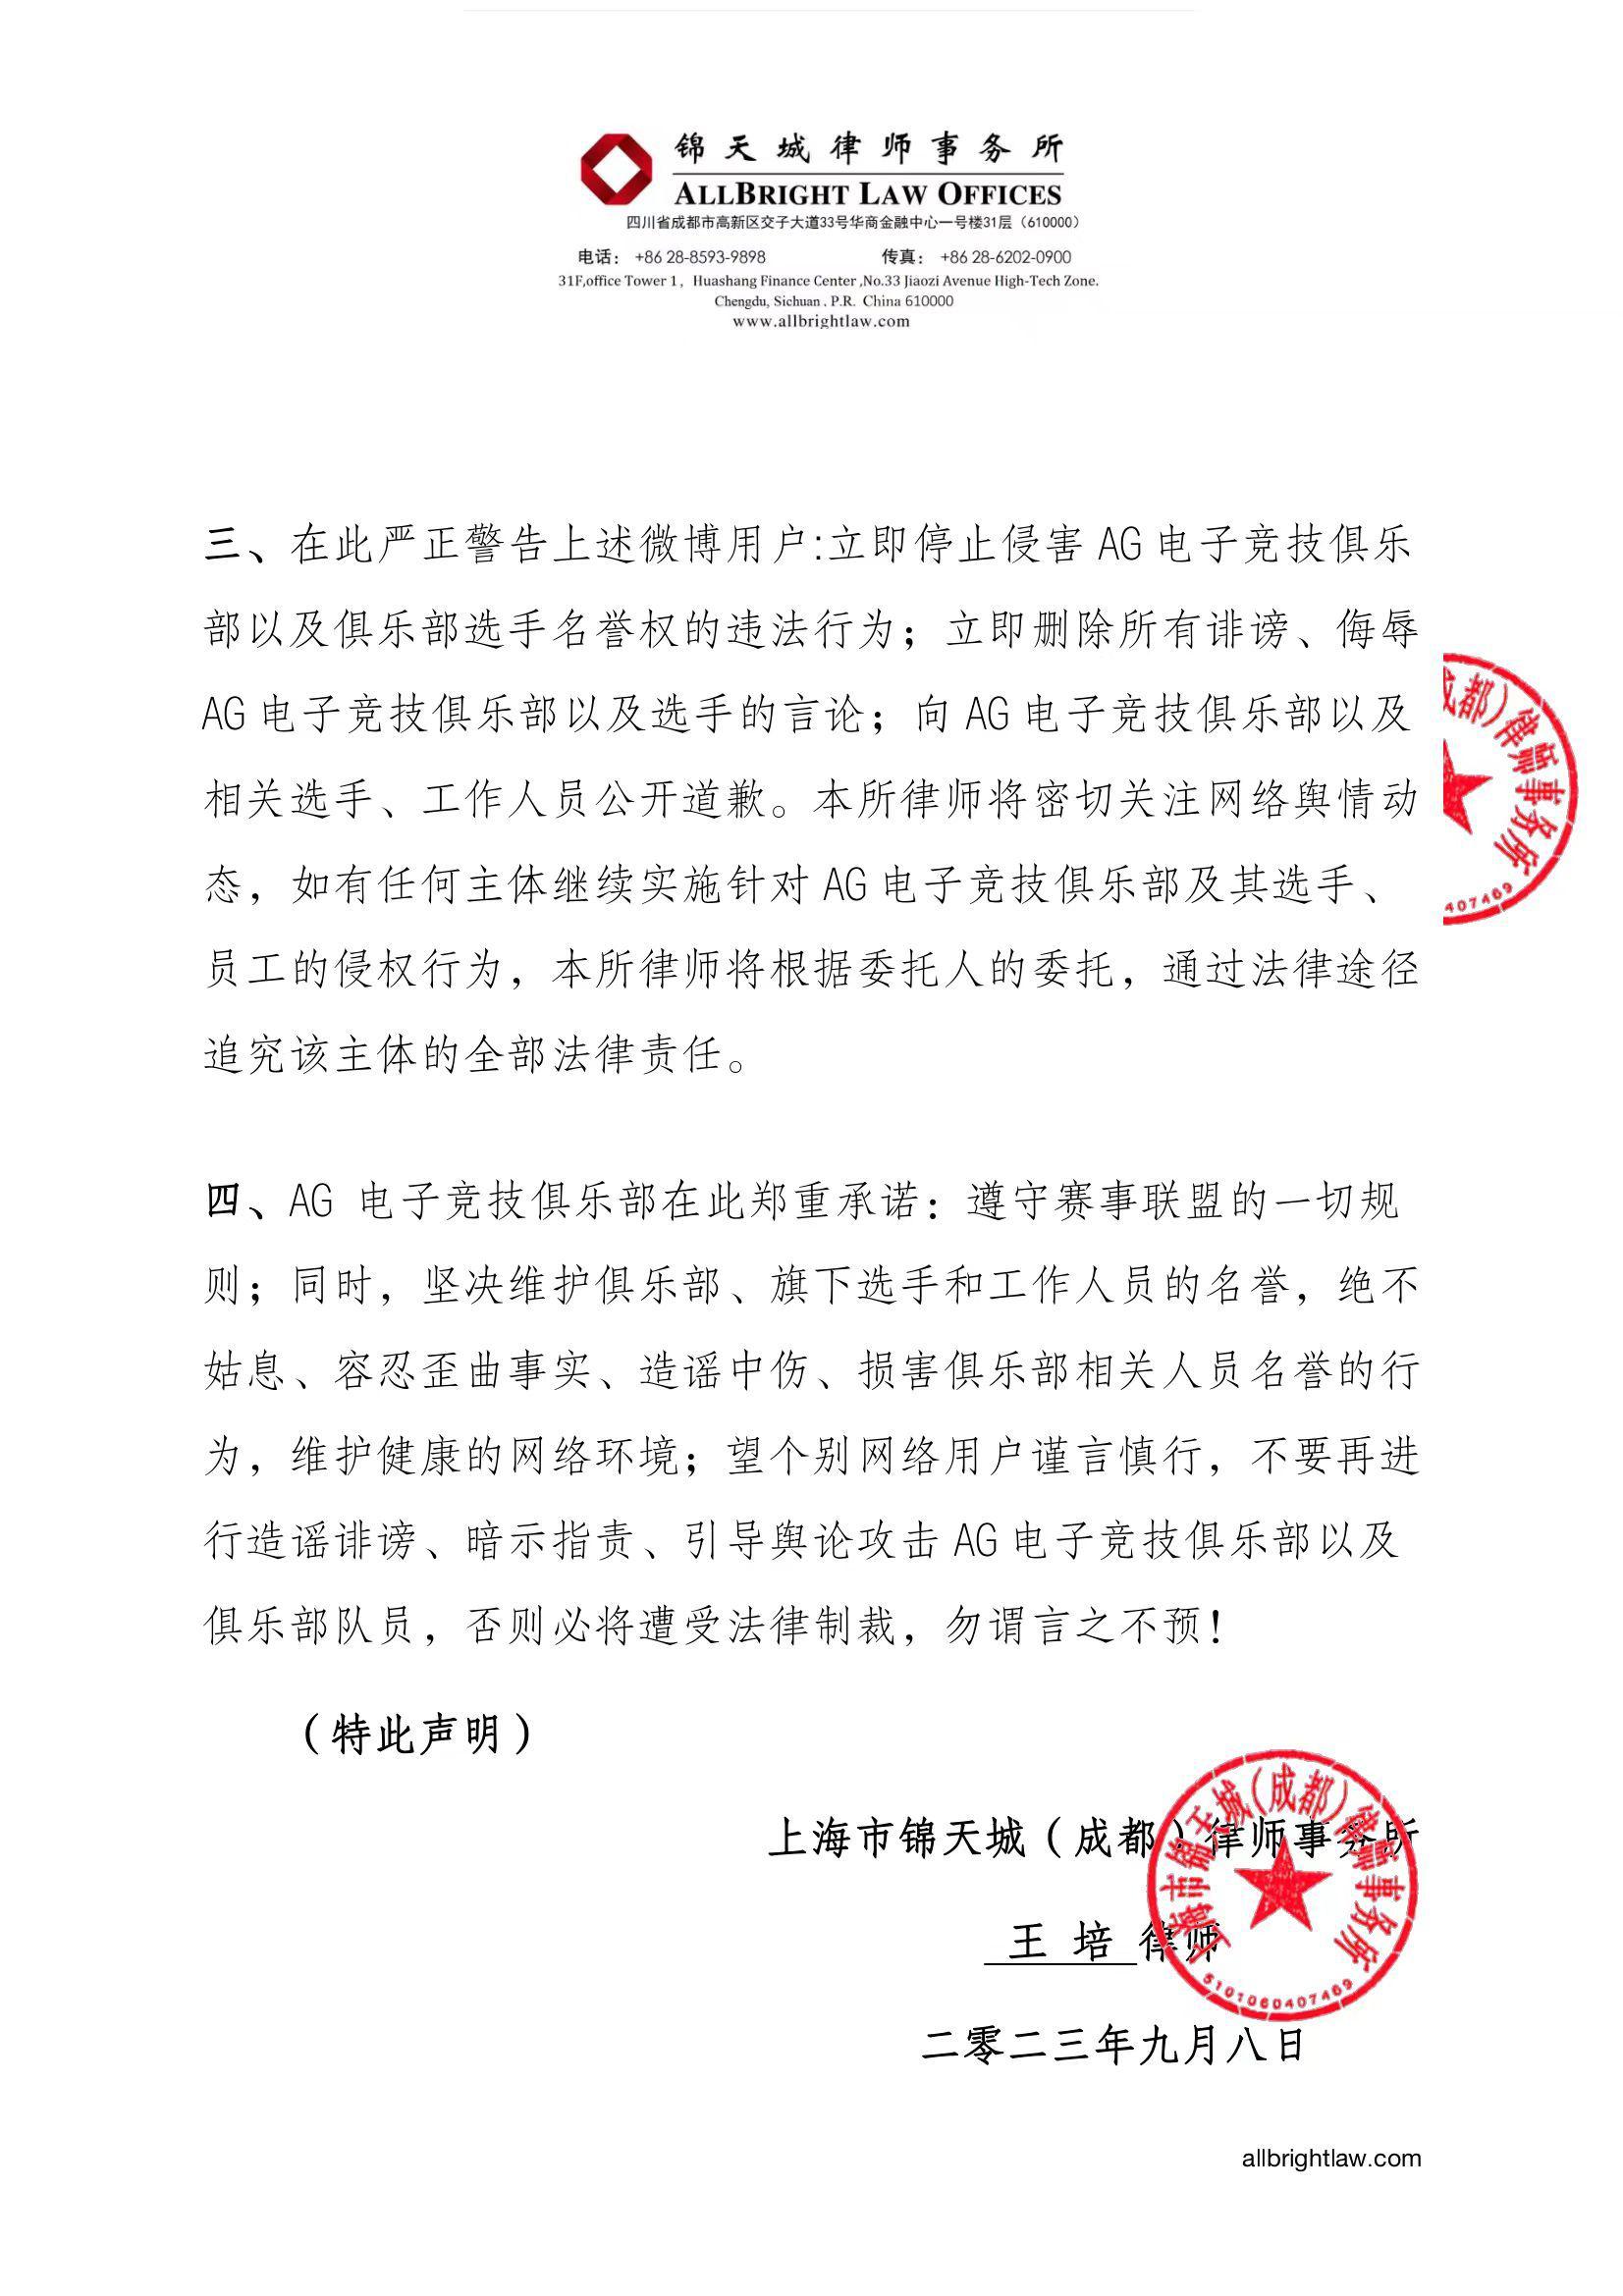 成都AG俱乐部发布律师声明：立即停止侵害AG俱乐部与选手名誉的行为(2)